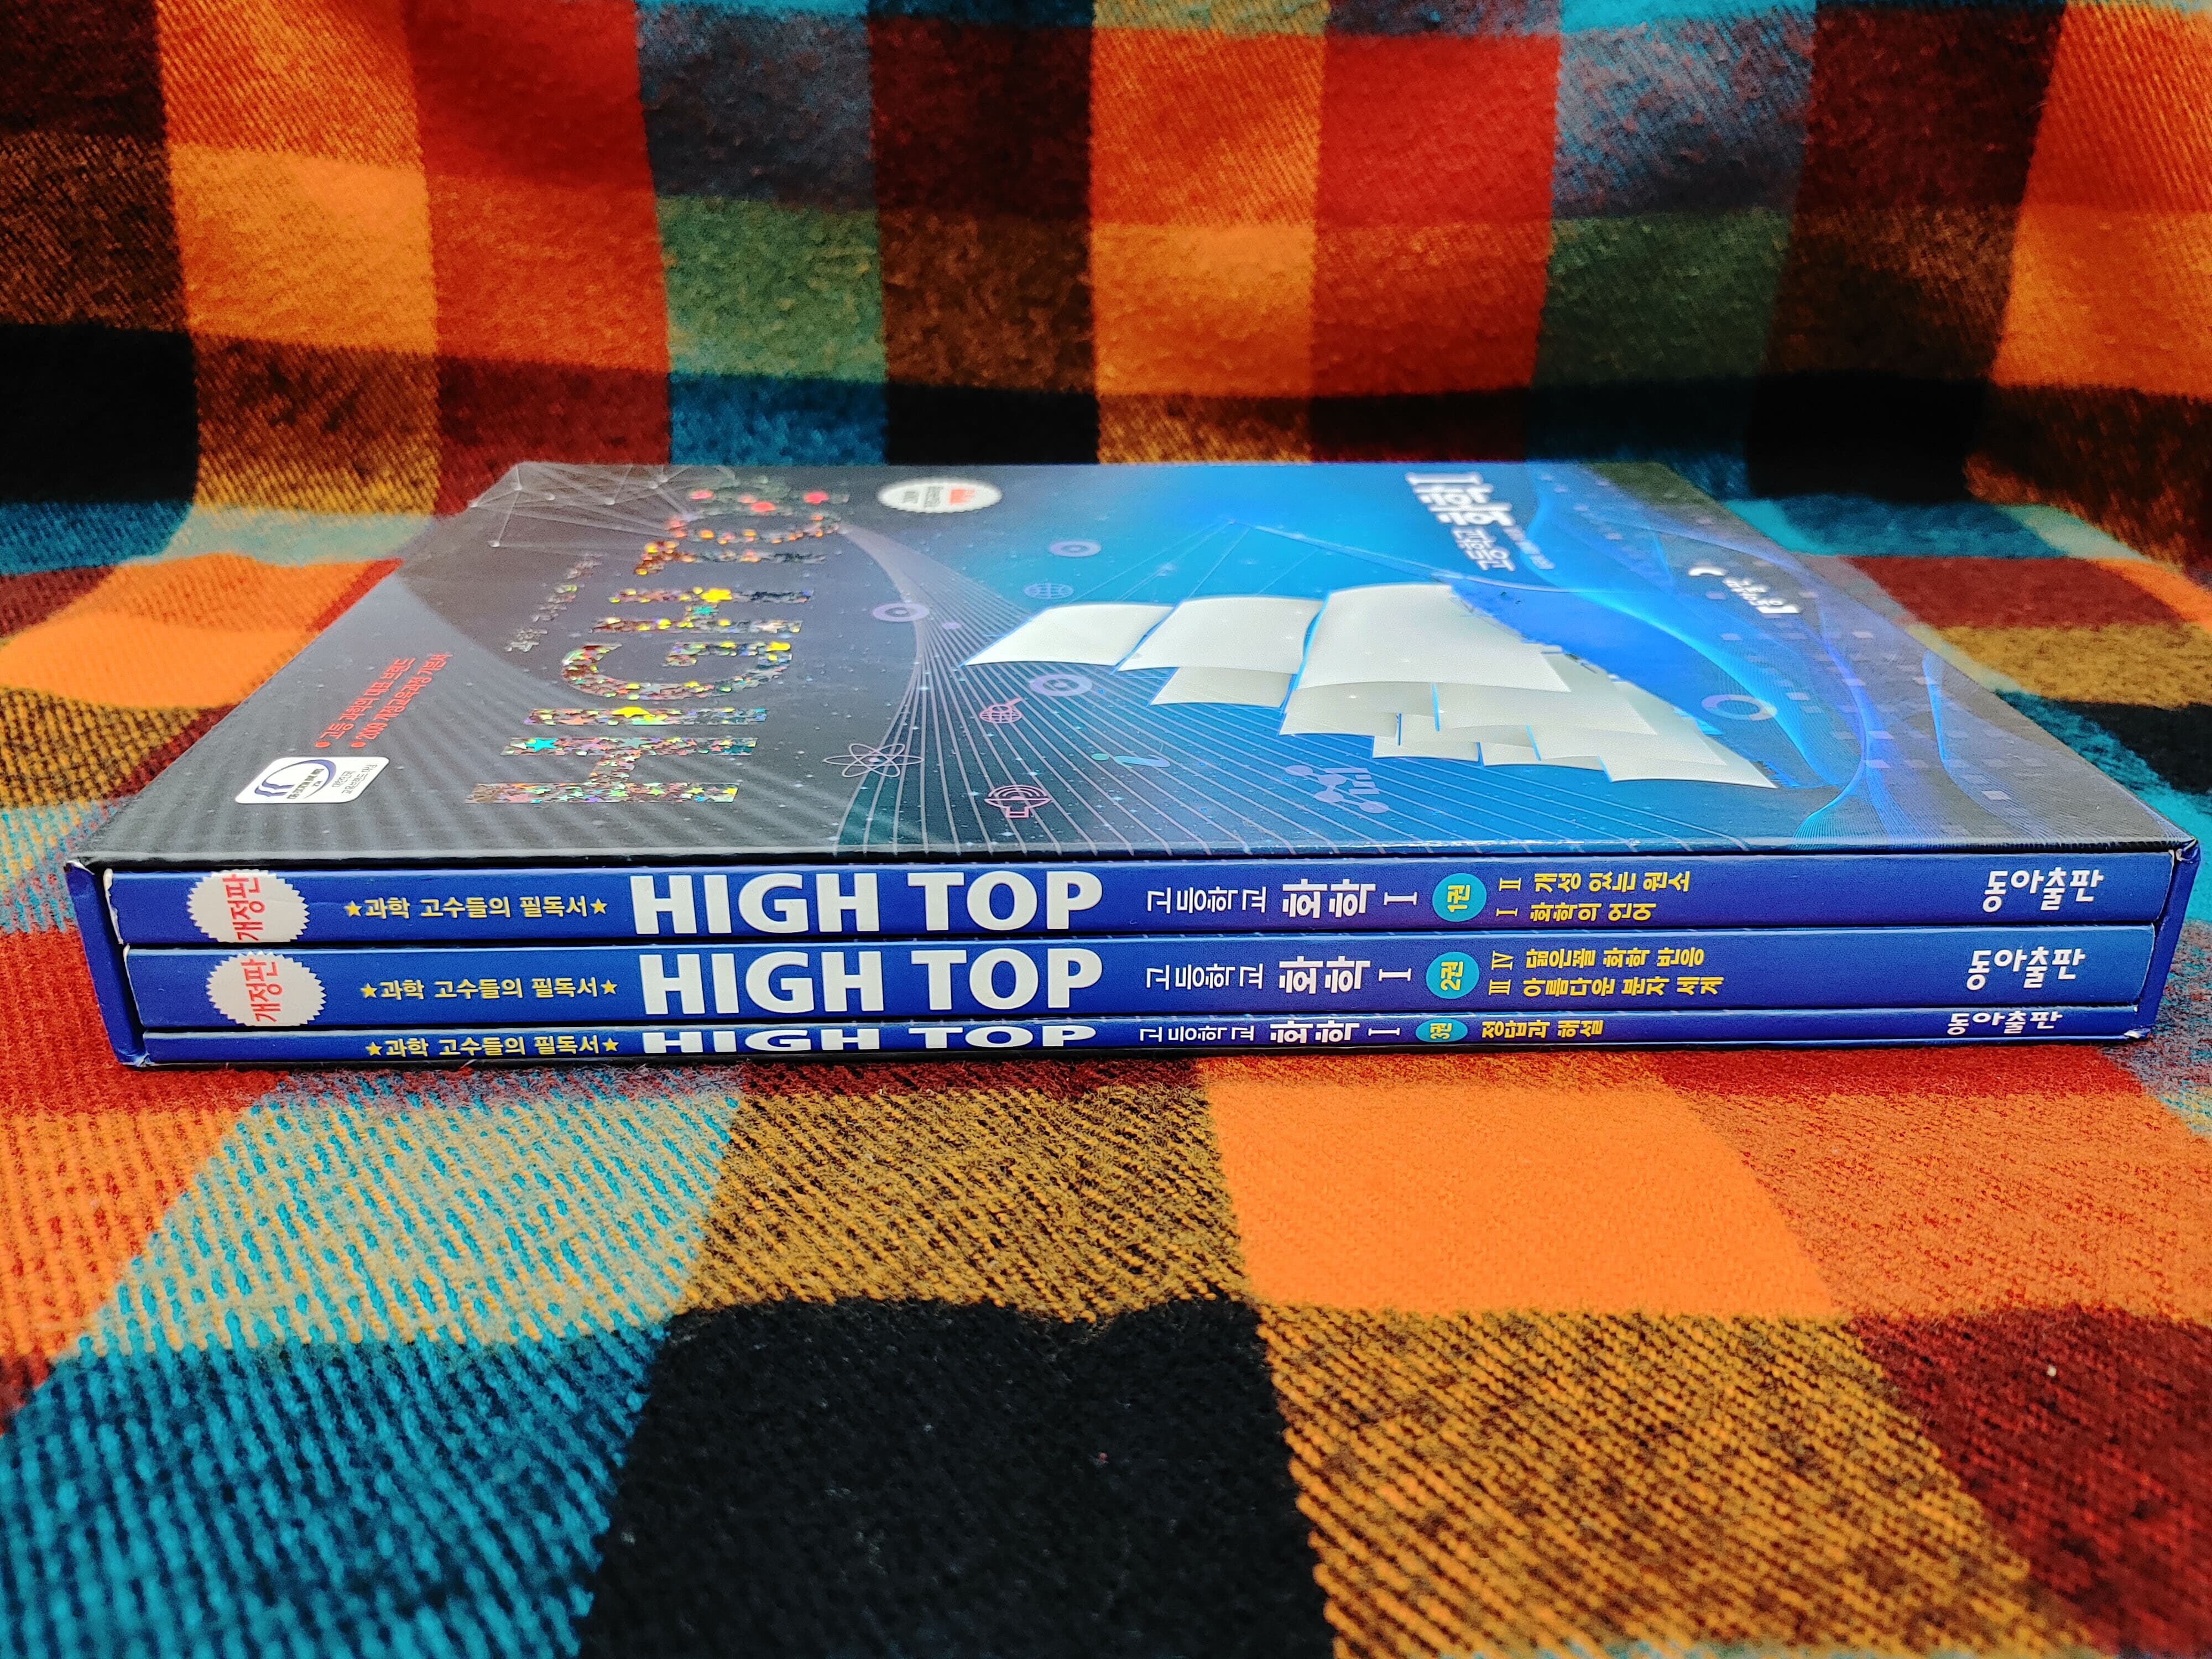 HIGH TOP 하이탑 고등학교 화학 1 (2018년용)